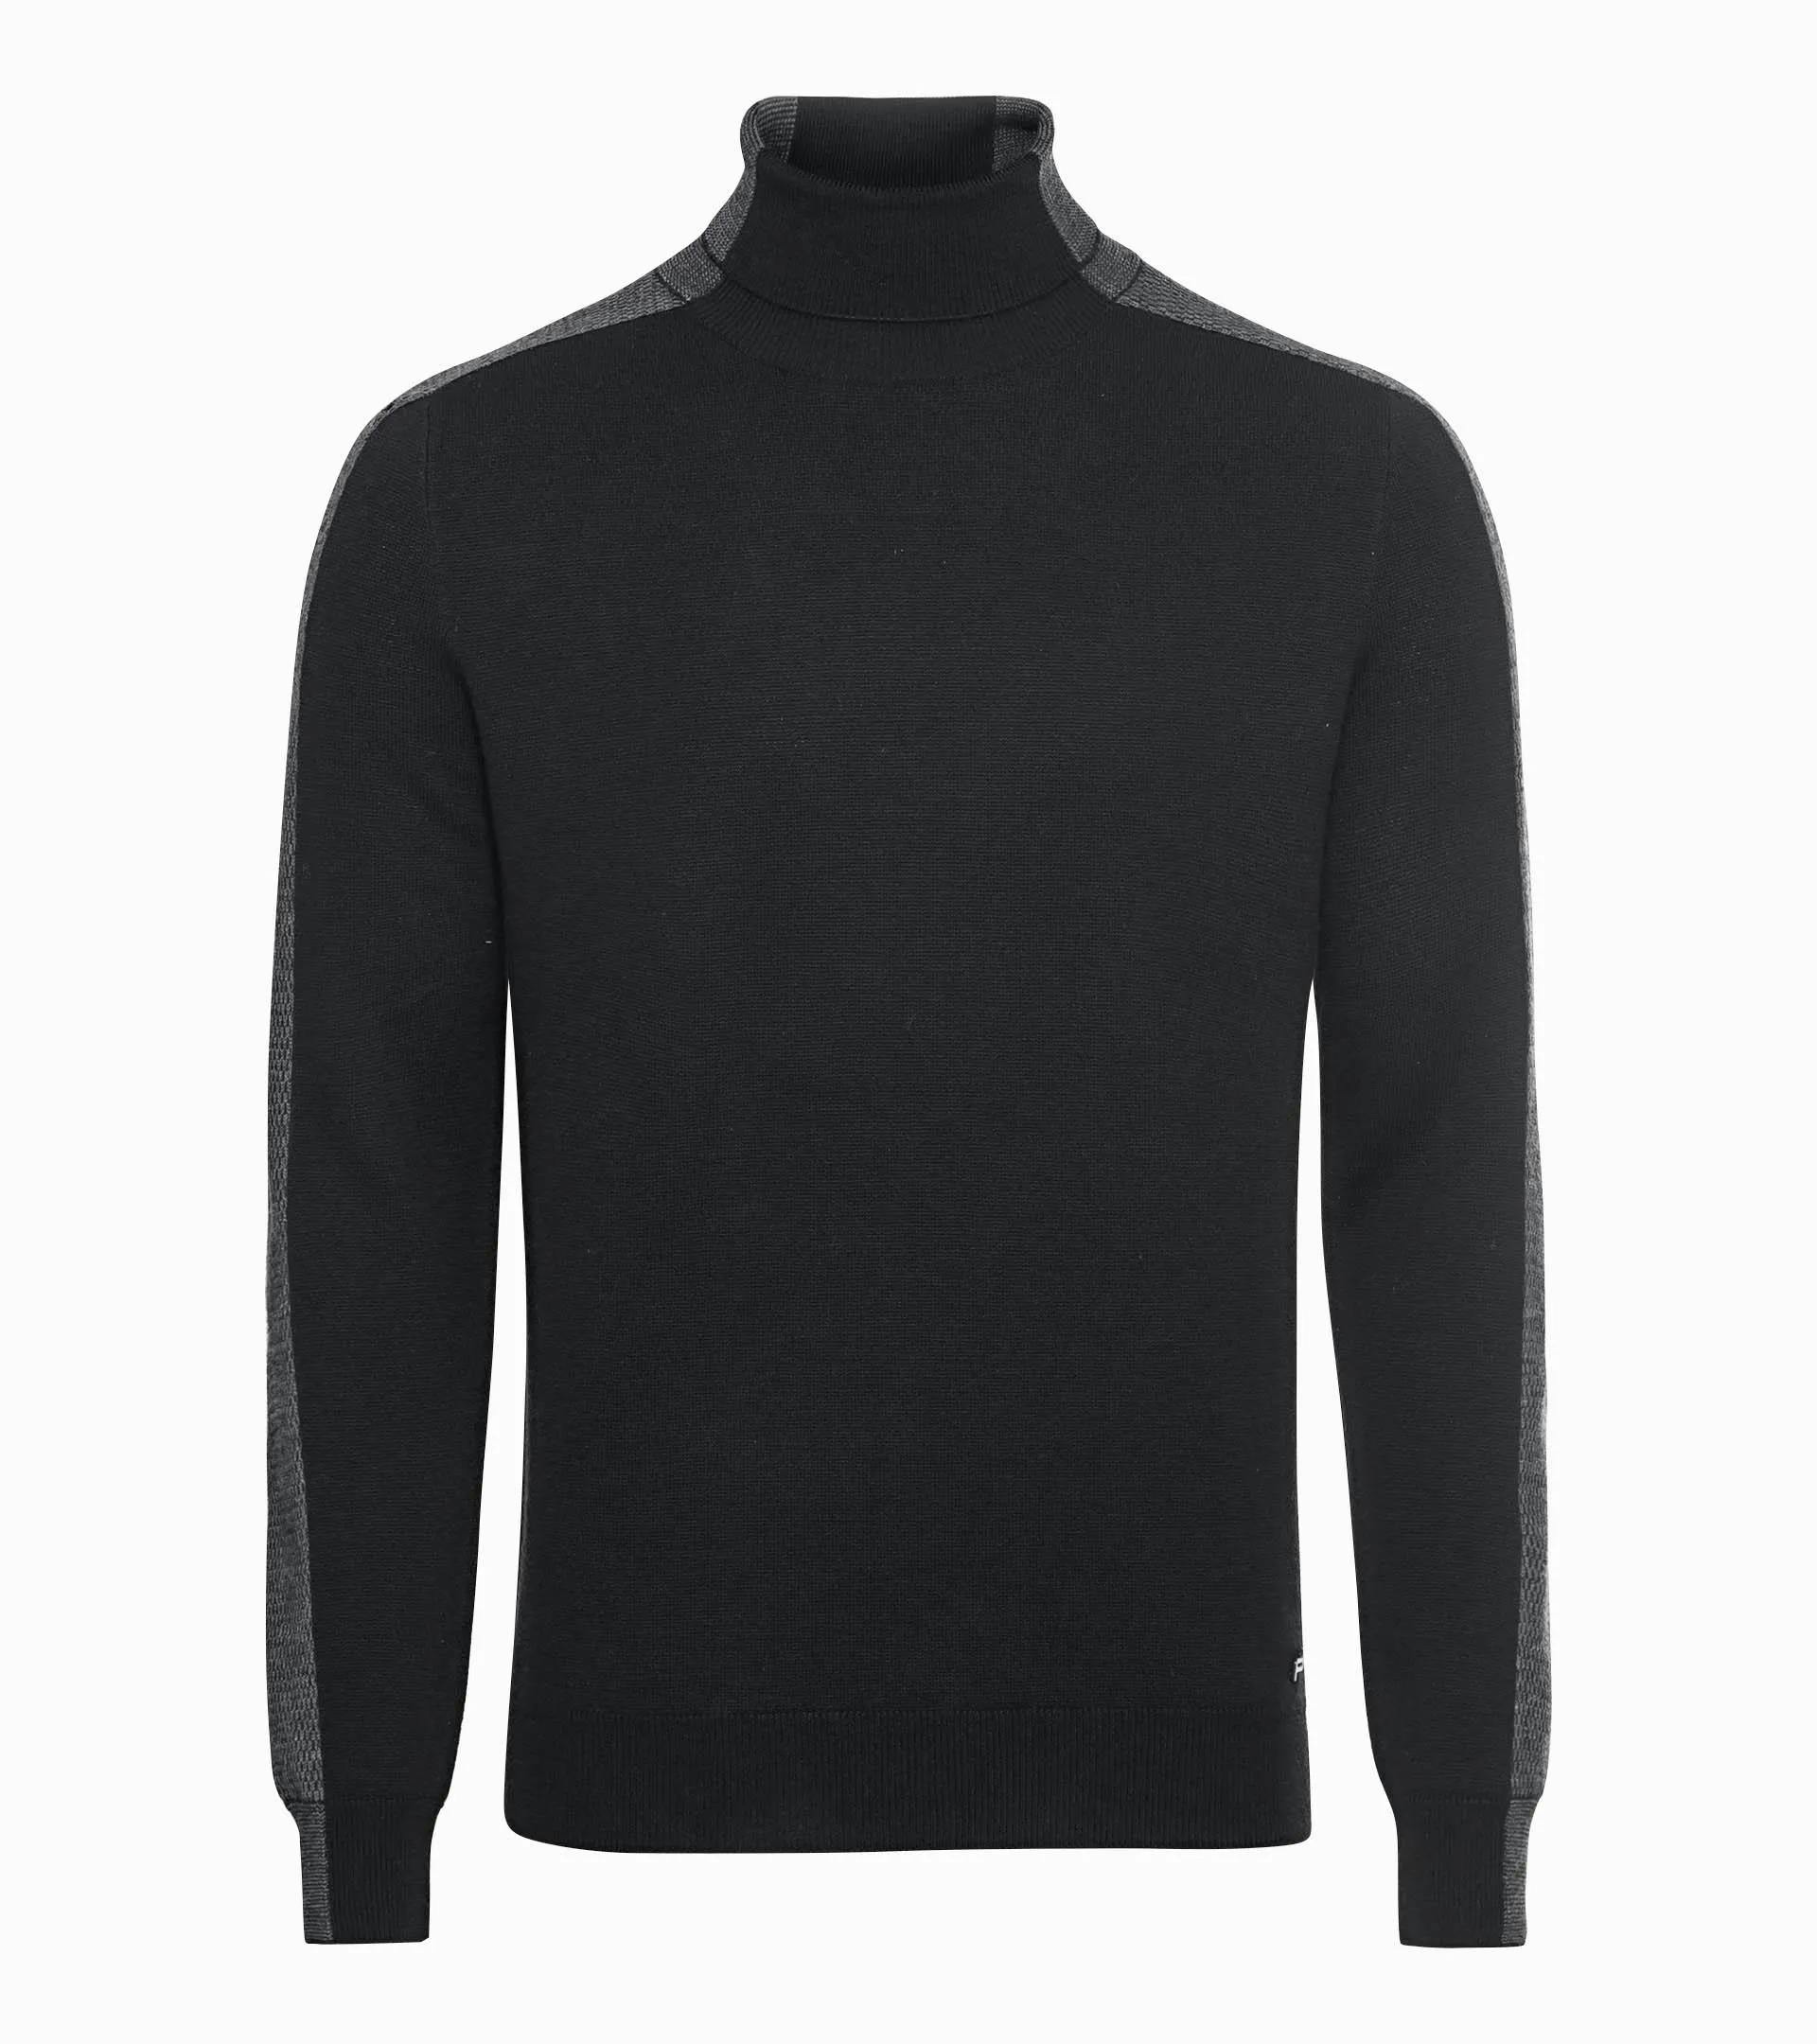 Black, Pure Cashmere Turtle Neck Sweater